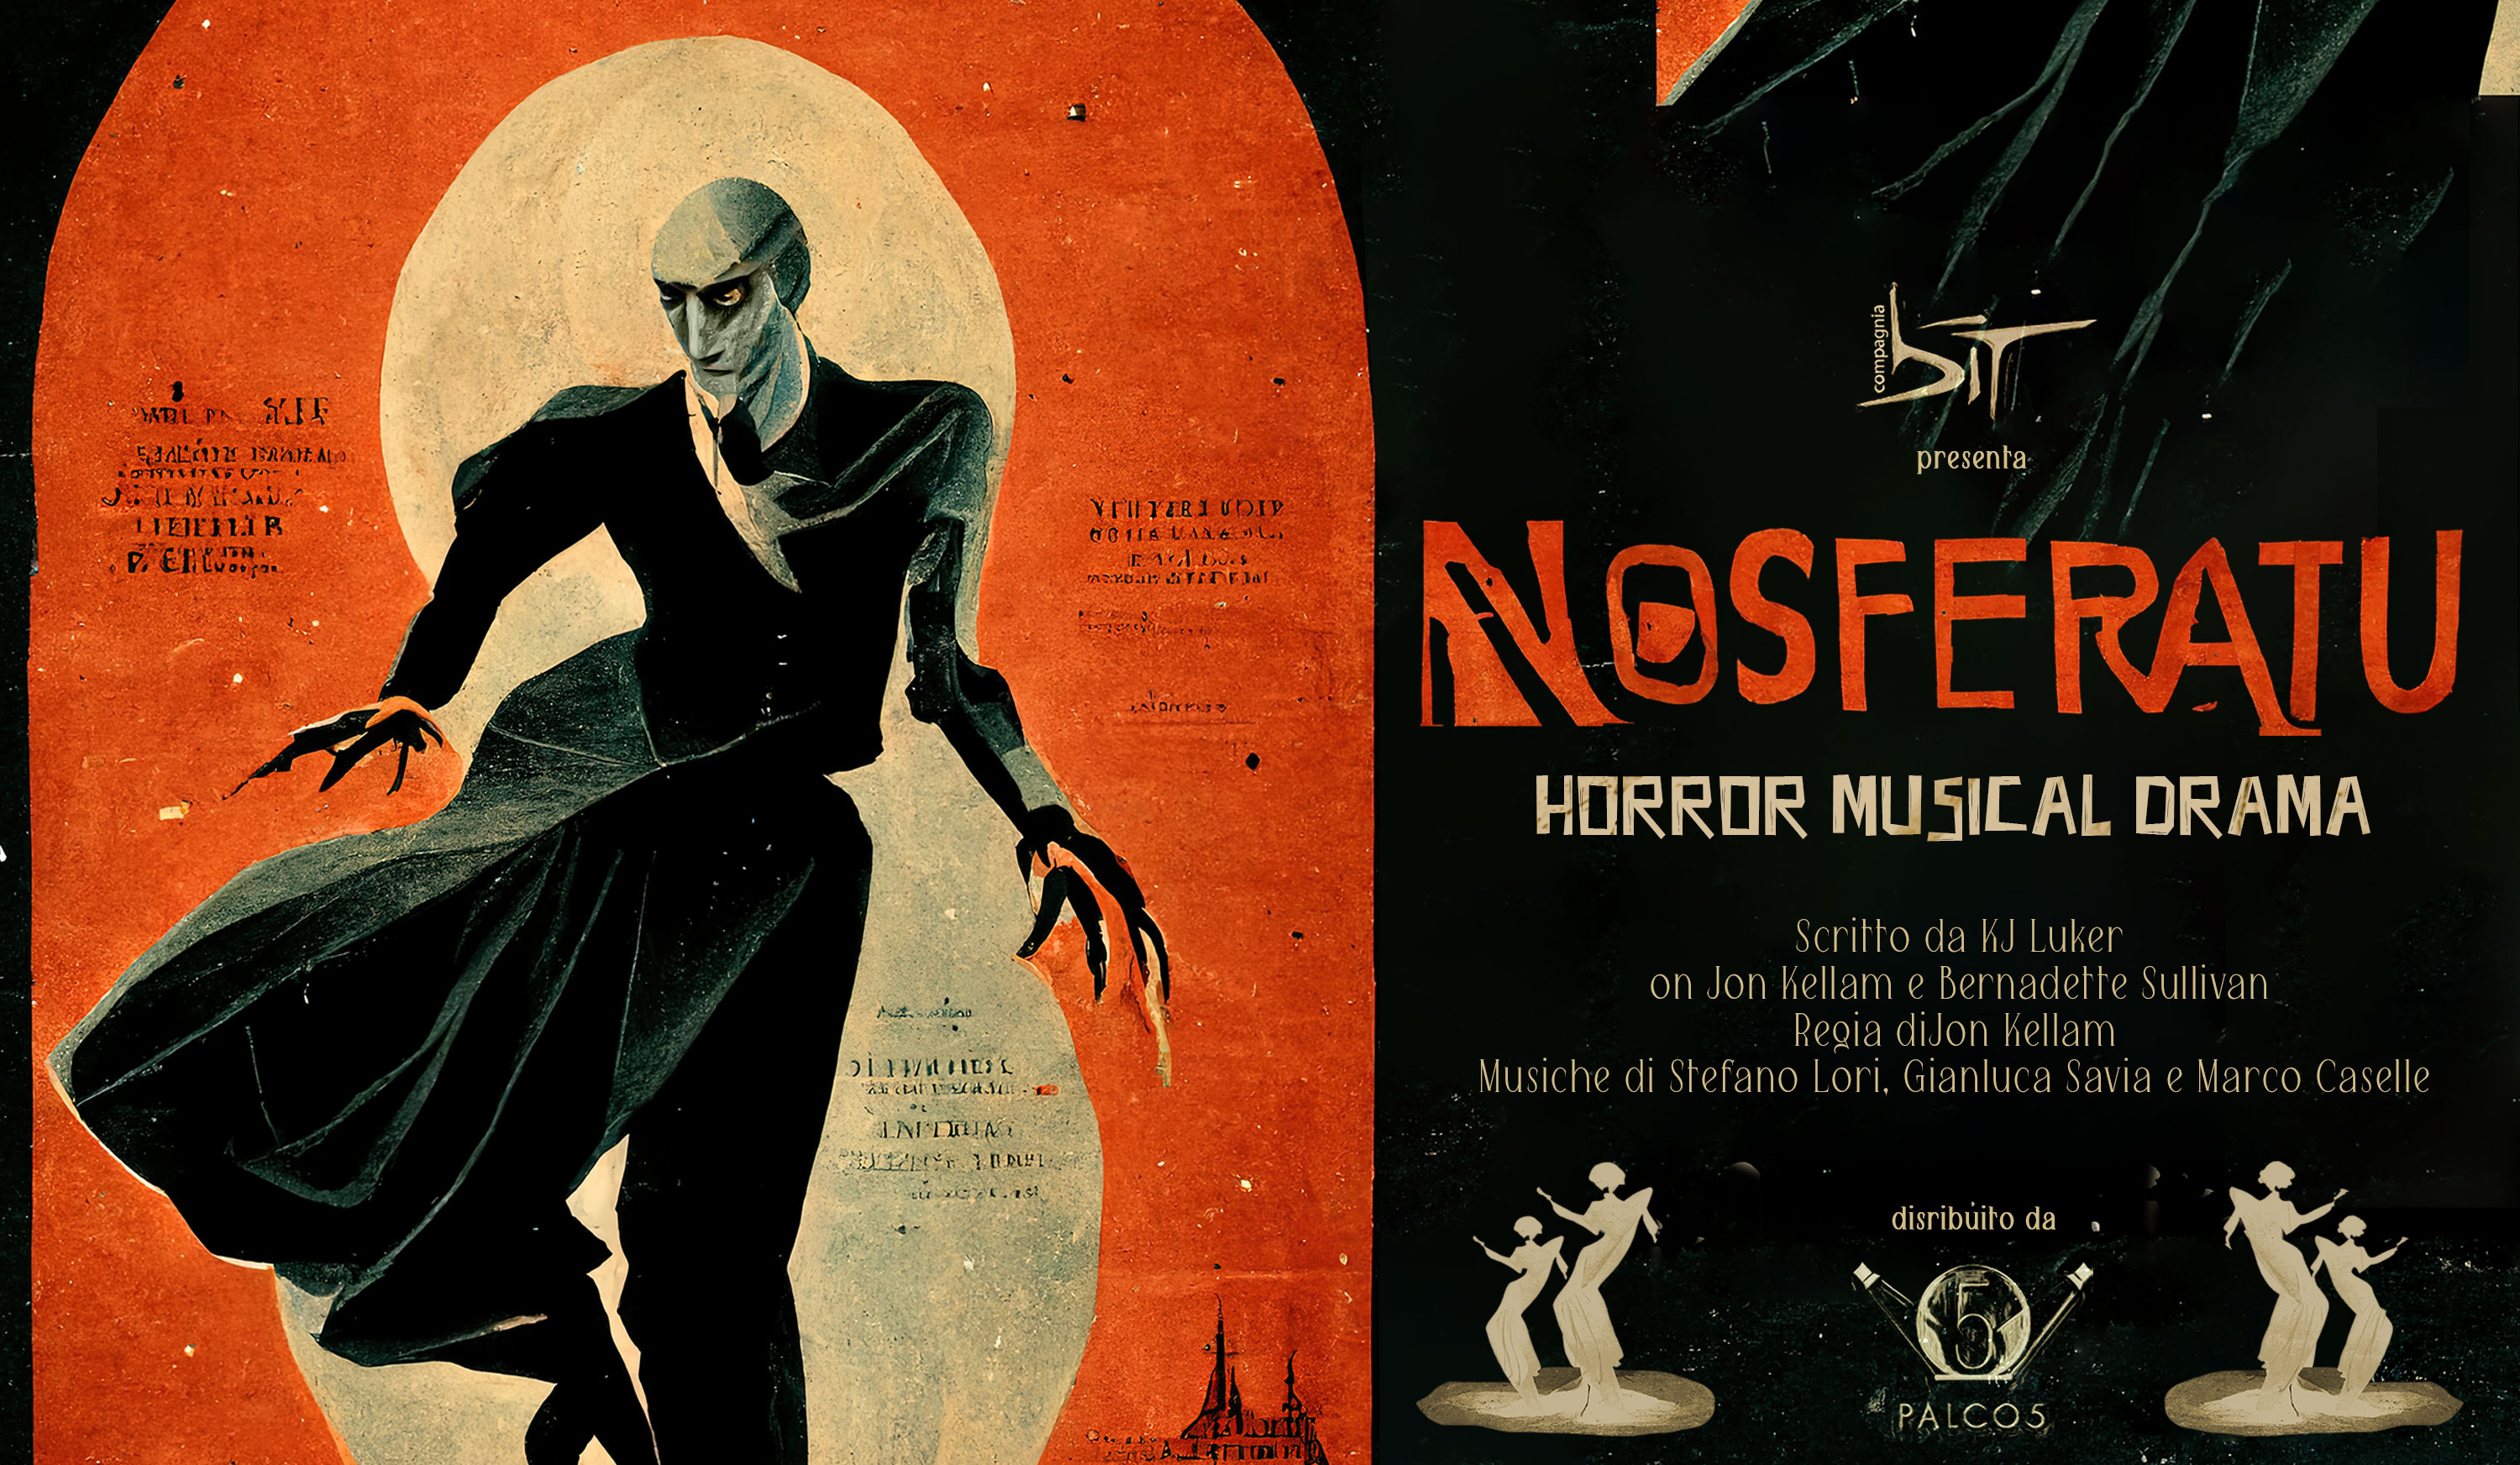 Nosferatu Musical Orror Drama